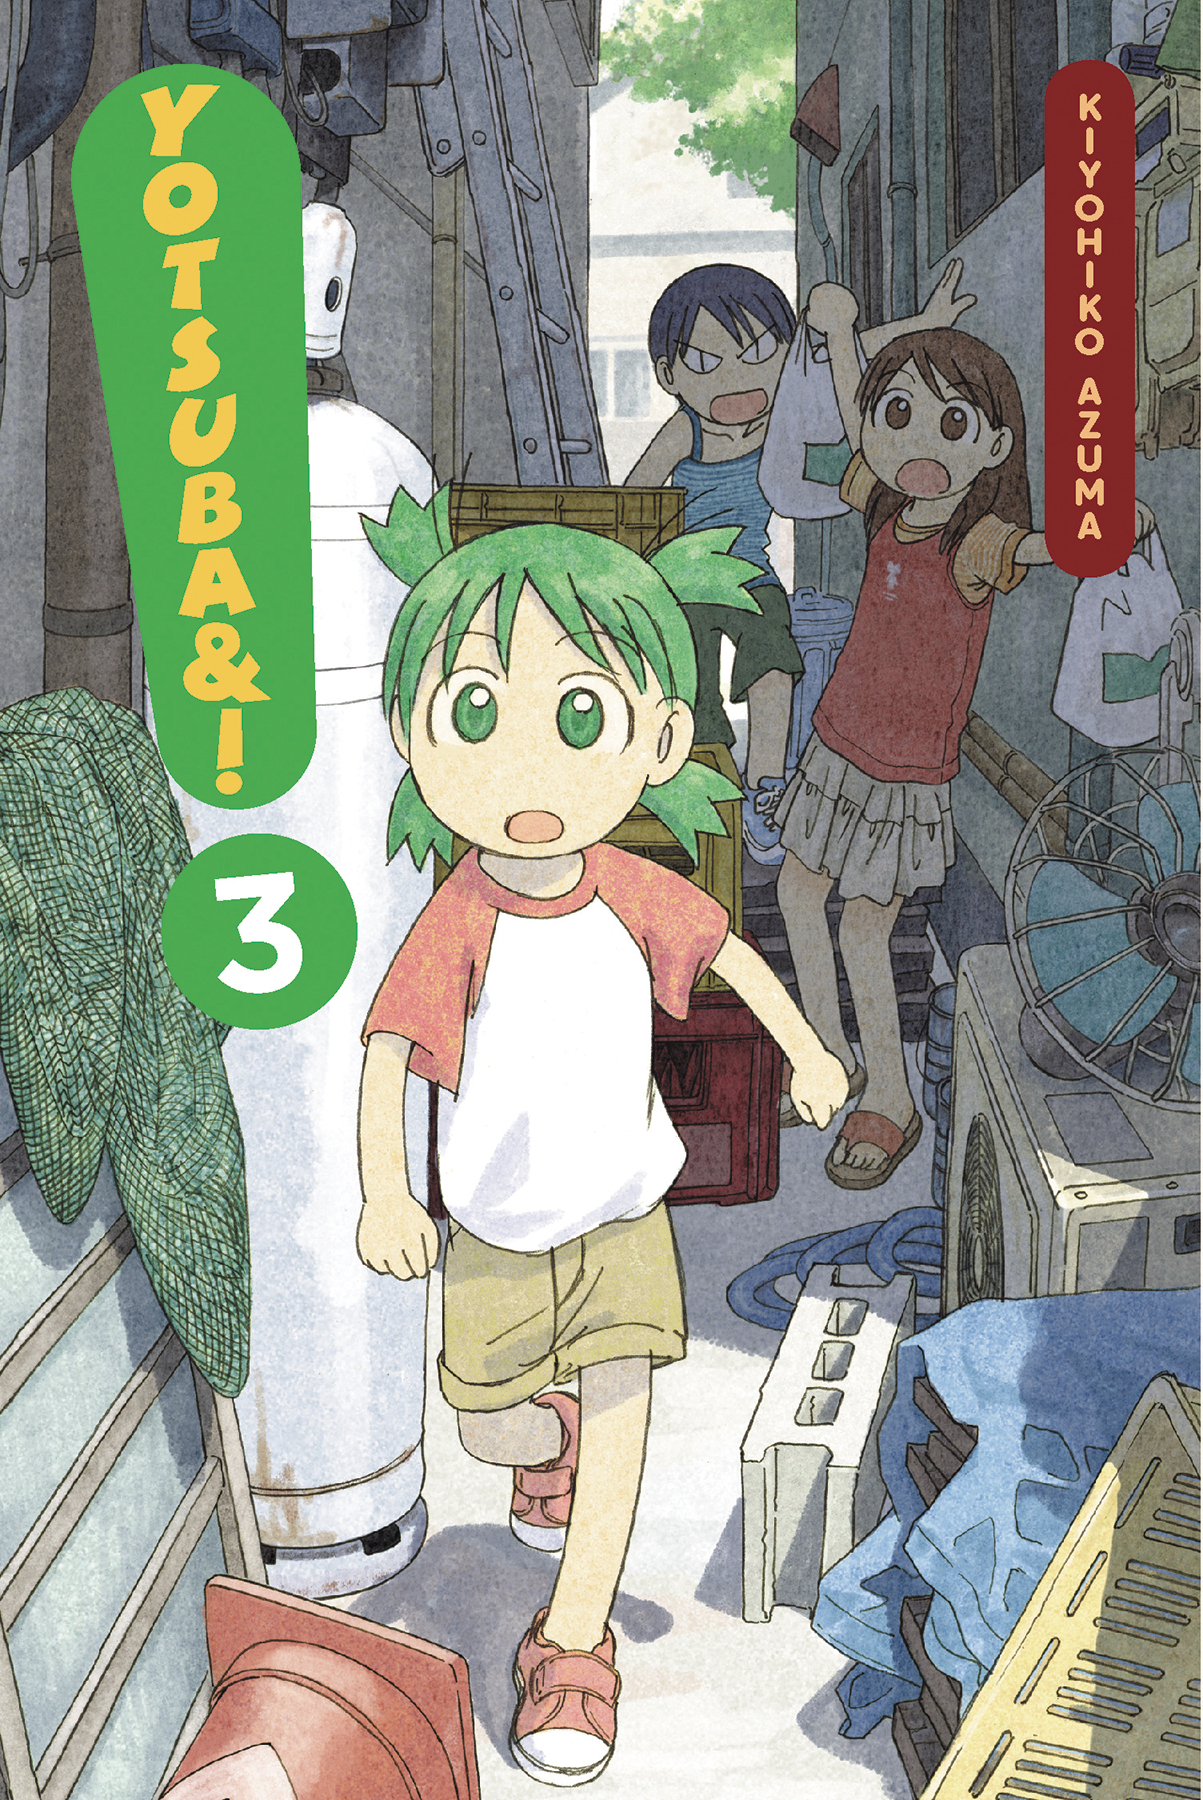 Yotsuba & ! Manga Volume 3